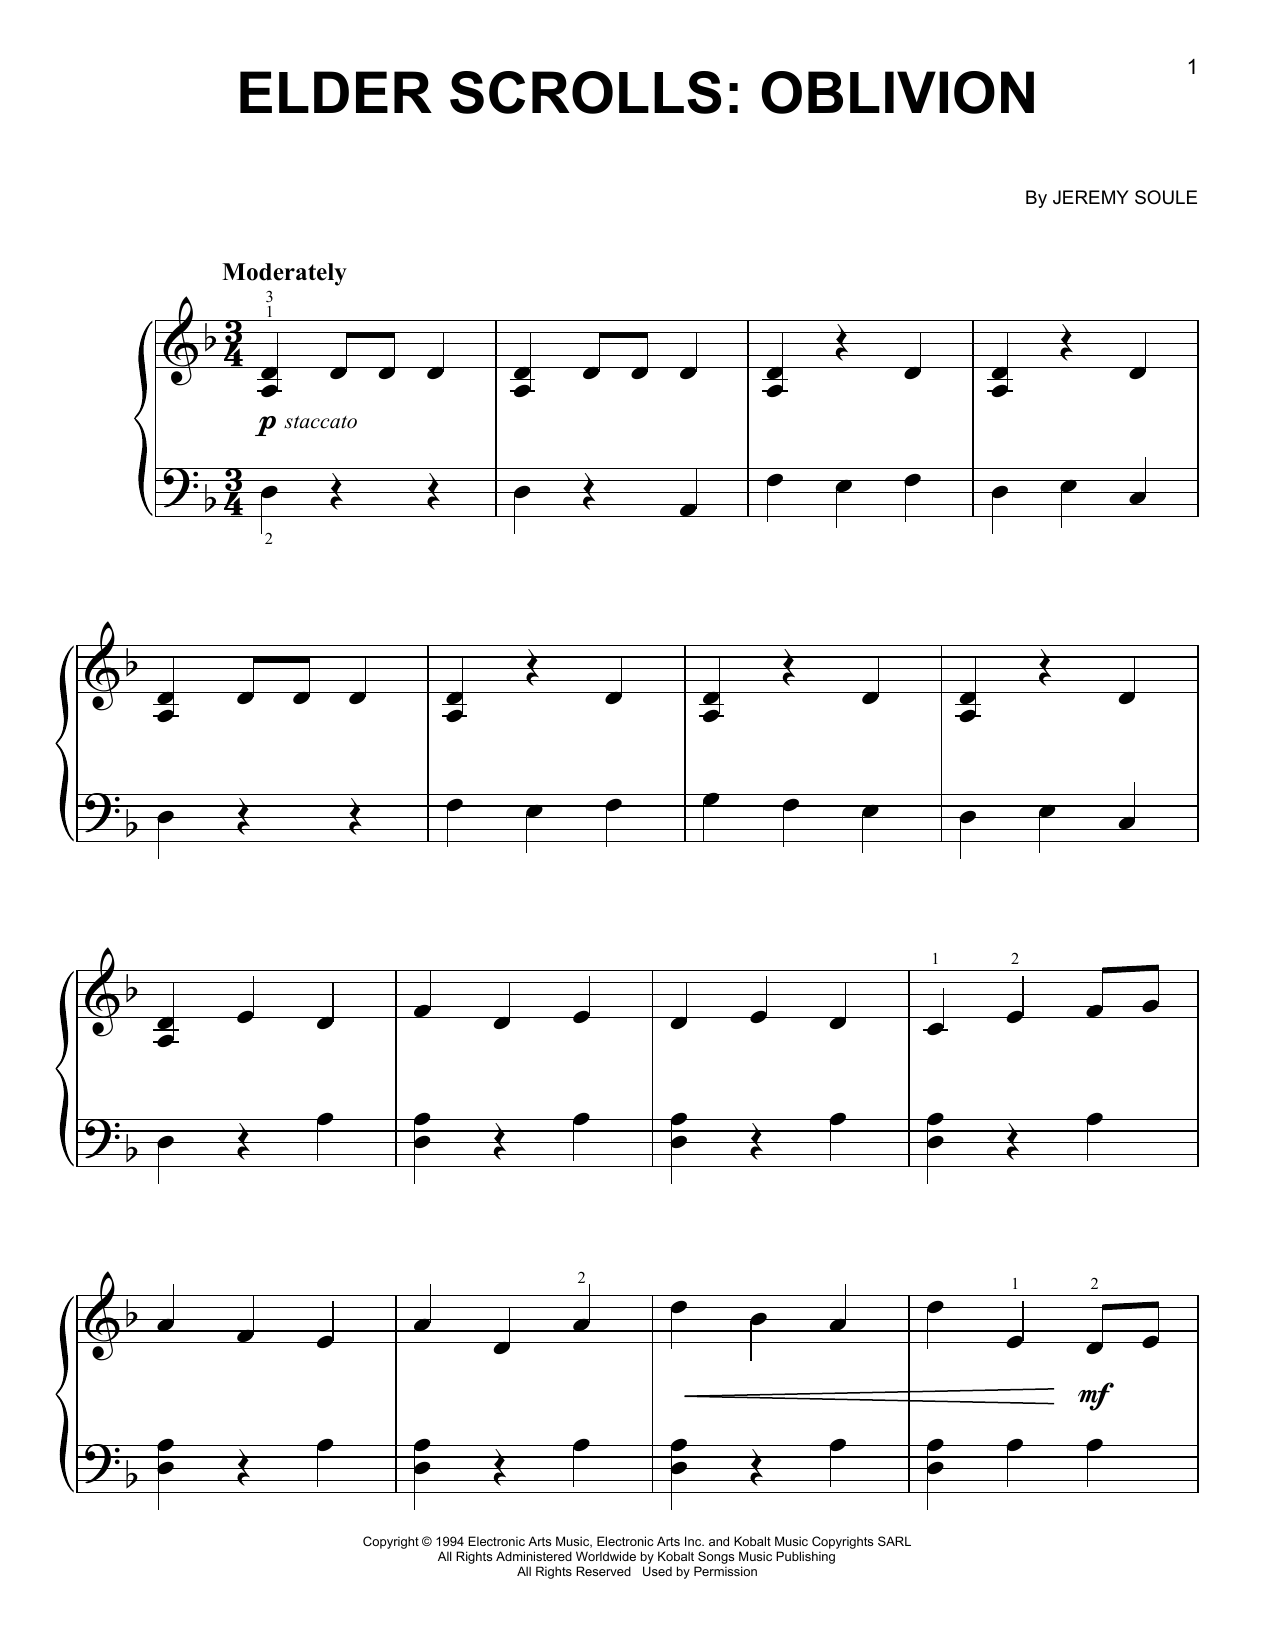 Jeremy Soule Elder Scrolls: Oblivion Sheet Music Notes & Chords for Easy Guitar Tab - Download or Print PDF